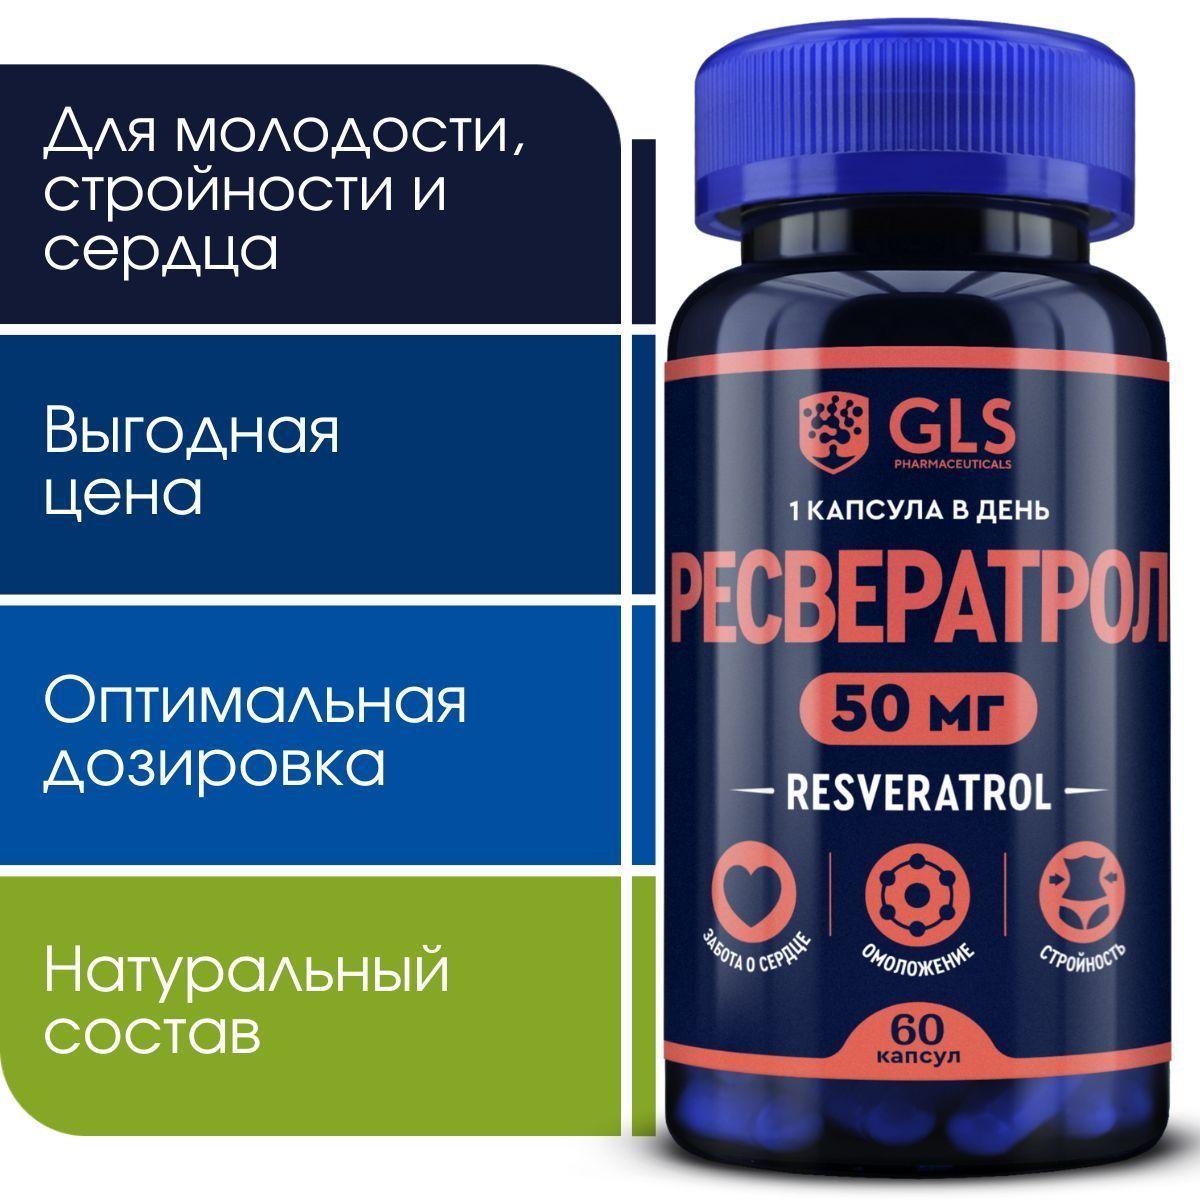 GLS Pharmaceuticals | Ресвератрол 50 мг, витамины / бад для молодости, похудения, здоровья сердца и сосудов, 60 капсул